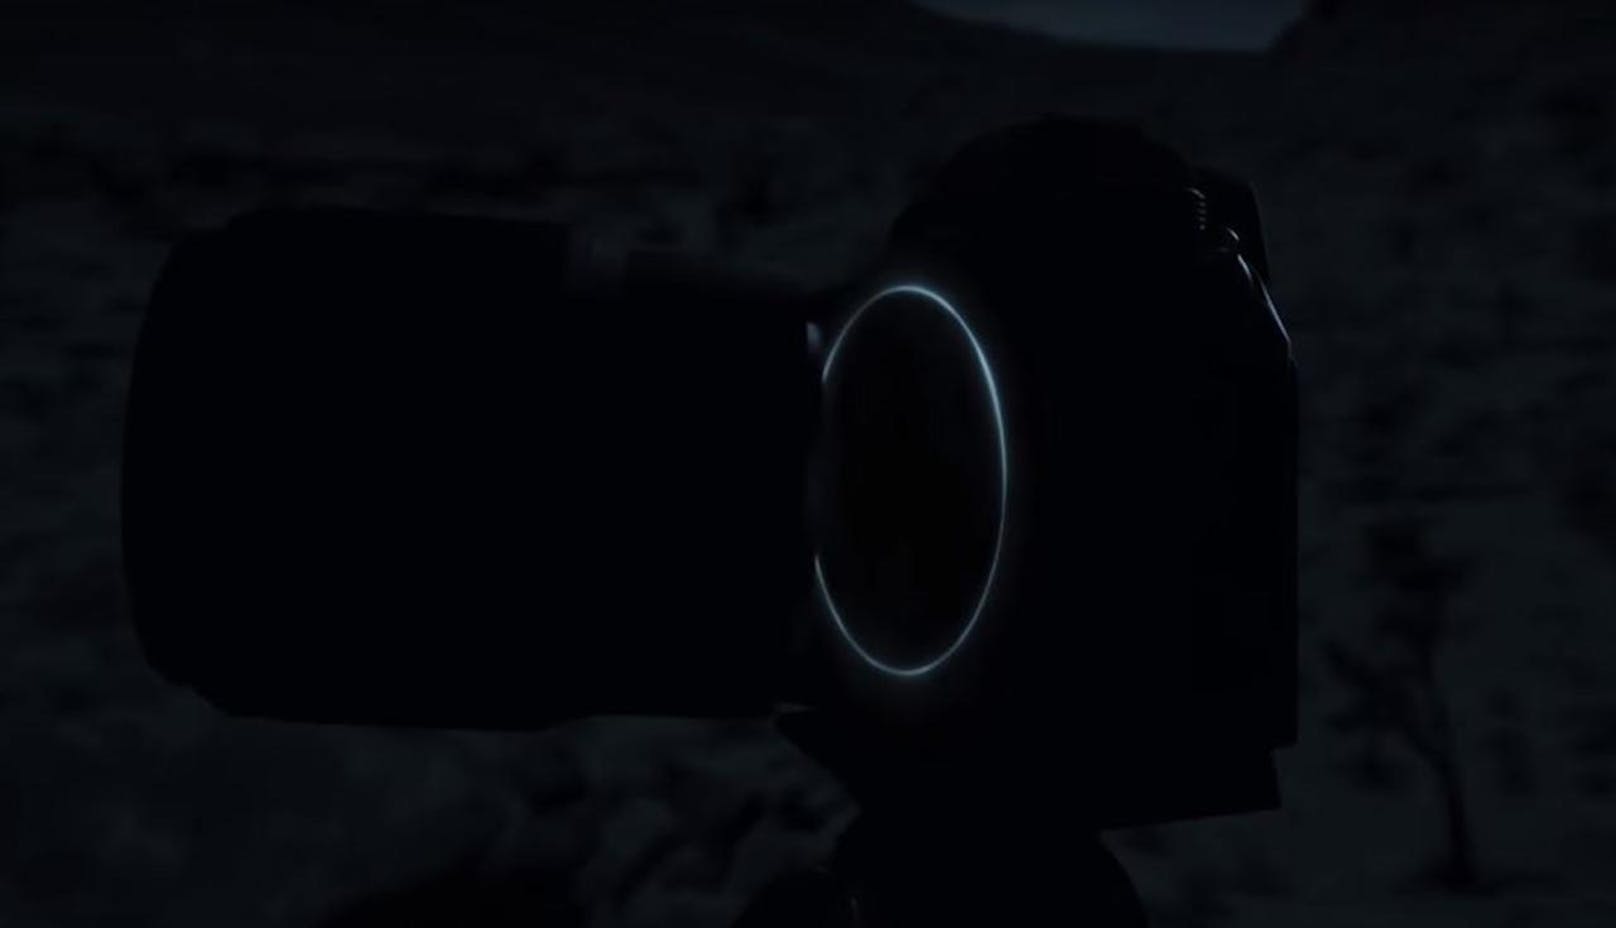 <b>30. Juli 2018:</b> Mit einem mysteriösen Bild kündigt Nikon eine spiegellose Nikon-FX-Vollformat-Kamera an. Die spiegellose Kamera werde "eine neue Dimension der optischen Leistungsfähigkeit eröffnen". Nähere Details sind bisher nicht bekannt, die Kamera sopll allerdings über einen neuen Bajonettanschluss verfügen. Am 23. August will Nikon das Kamera-Highlight des Jahres vorstellen.